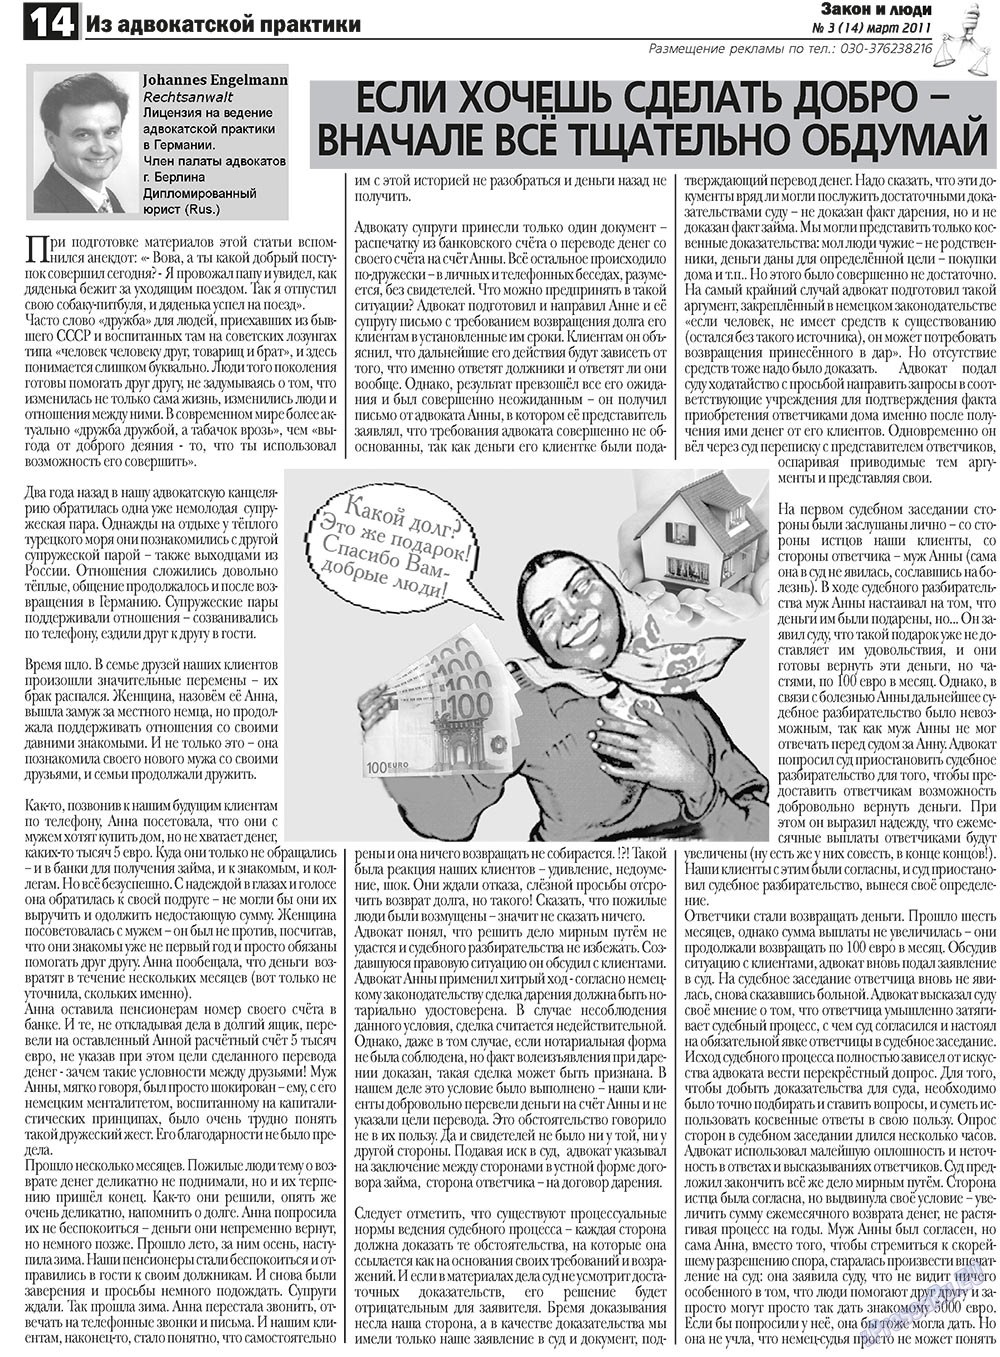 Закон и люди (газета). 2011 год, номер 3, стр. 14